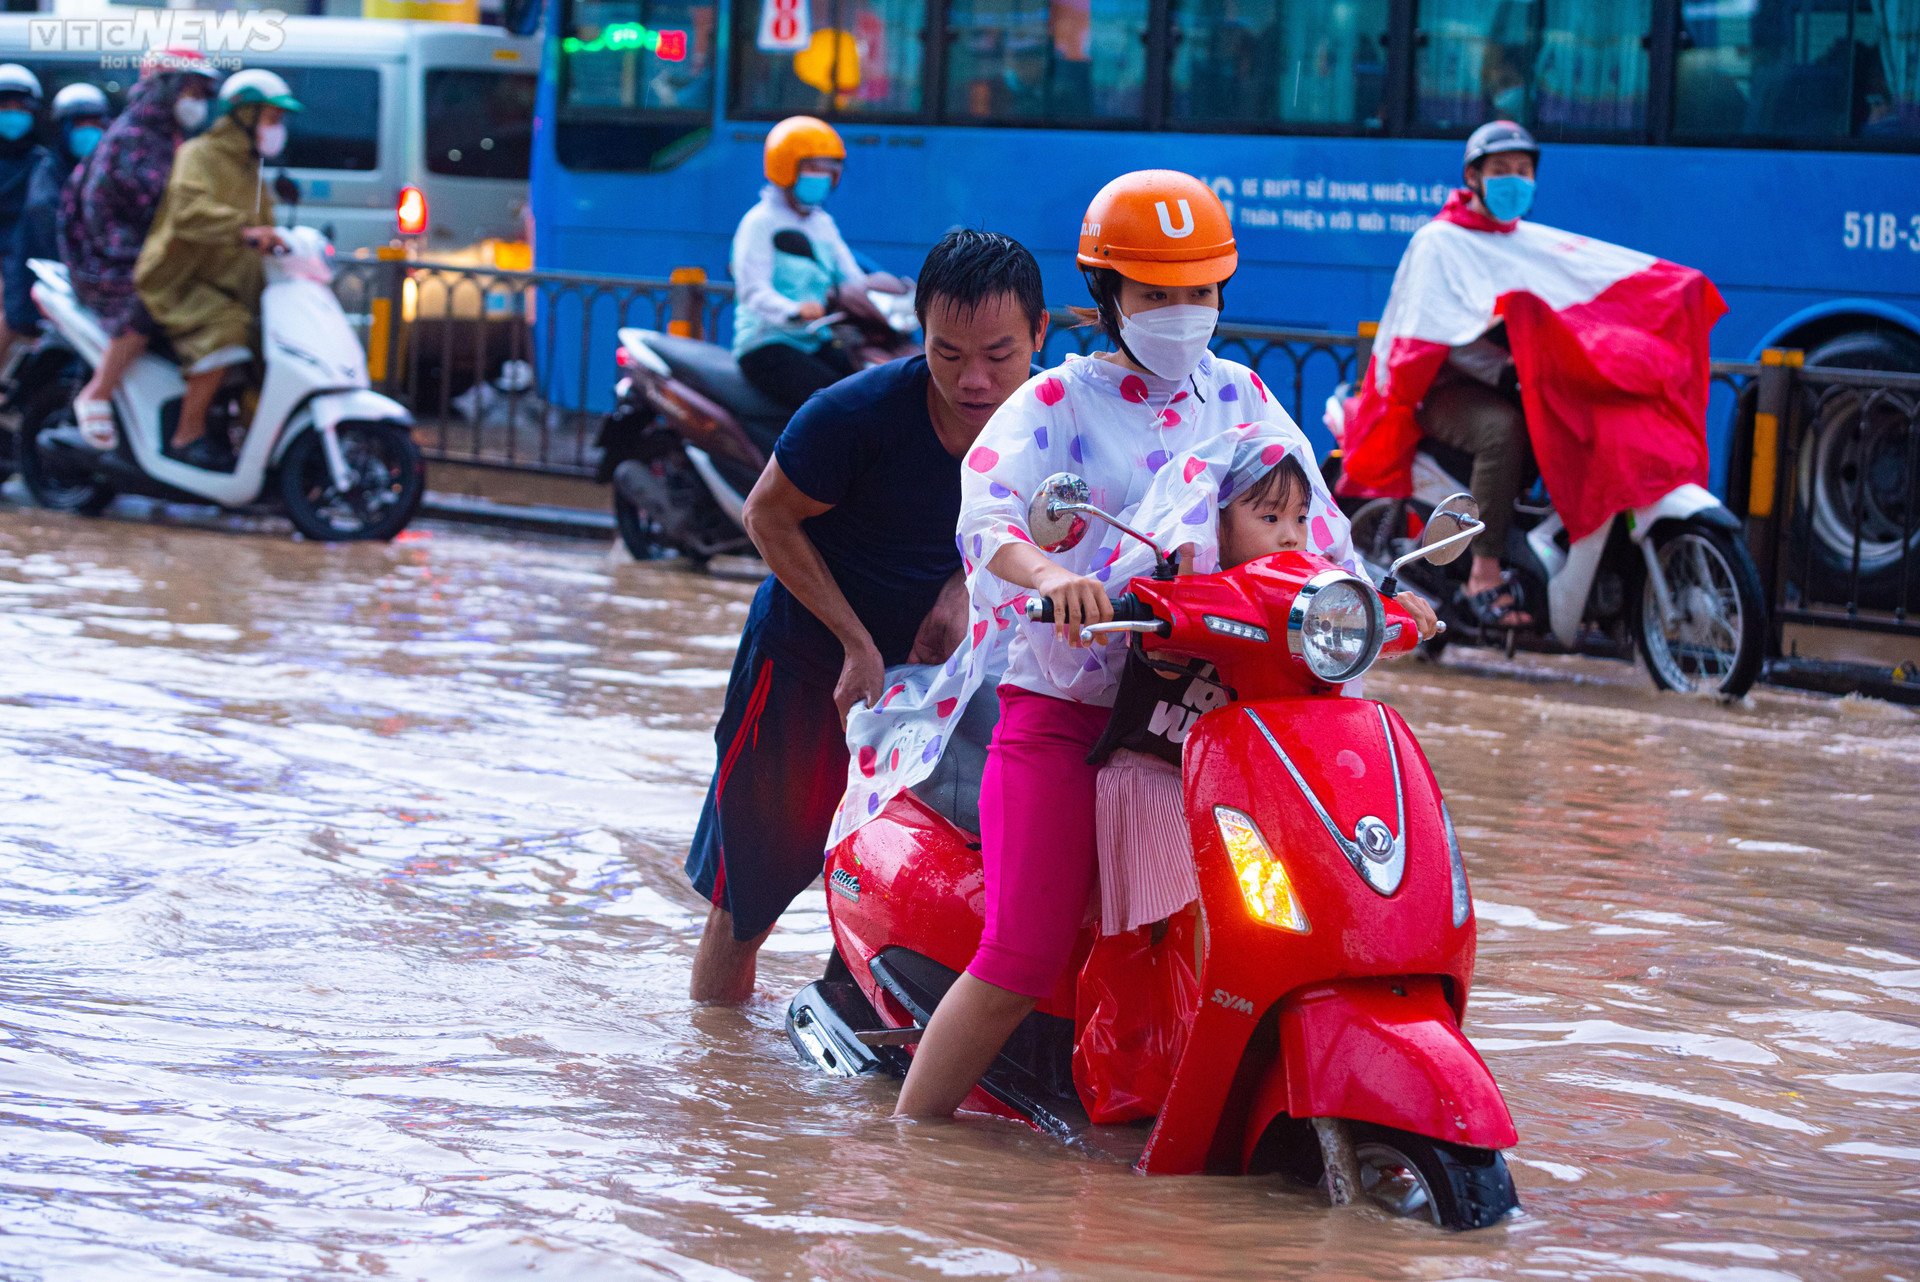 Người dân TP.HCM bì bõm lội nước về nhà sau cơn mưa lớn kéo dài hàng giờ - 7